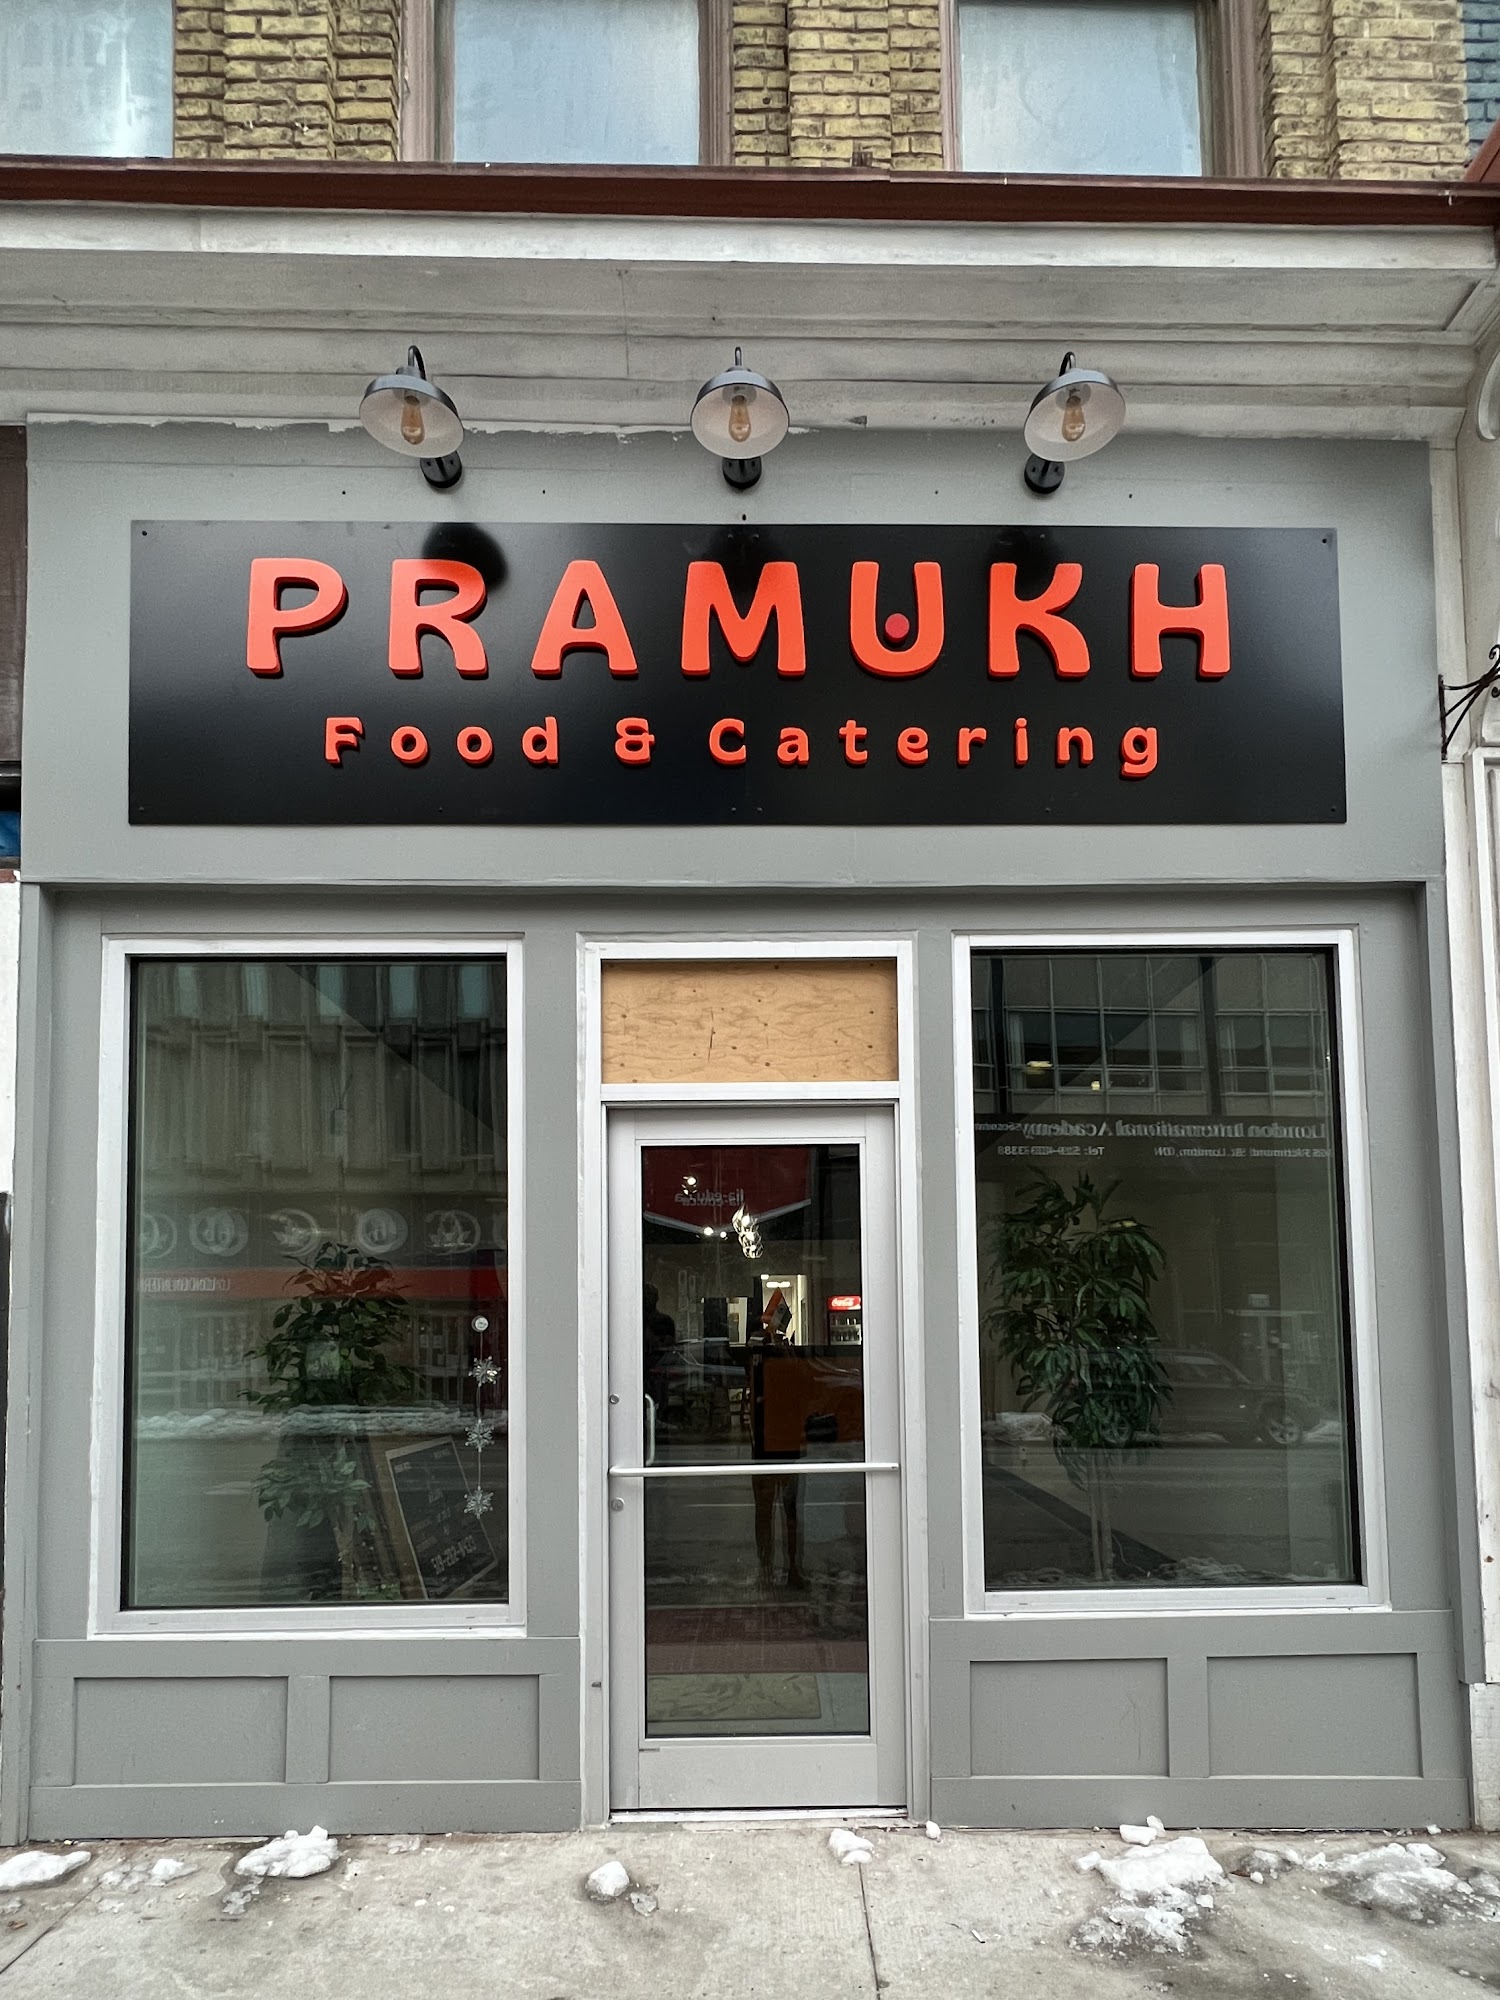 Pramukh Food & Catering